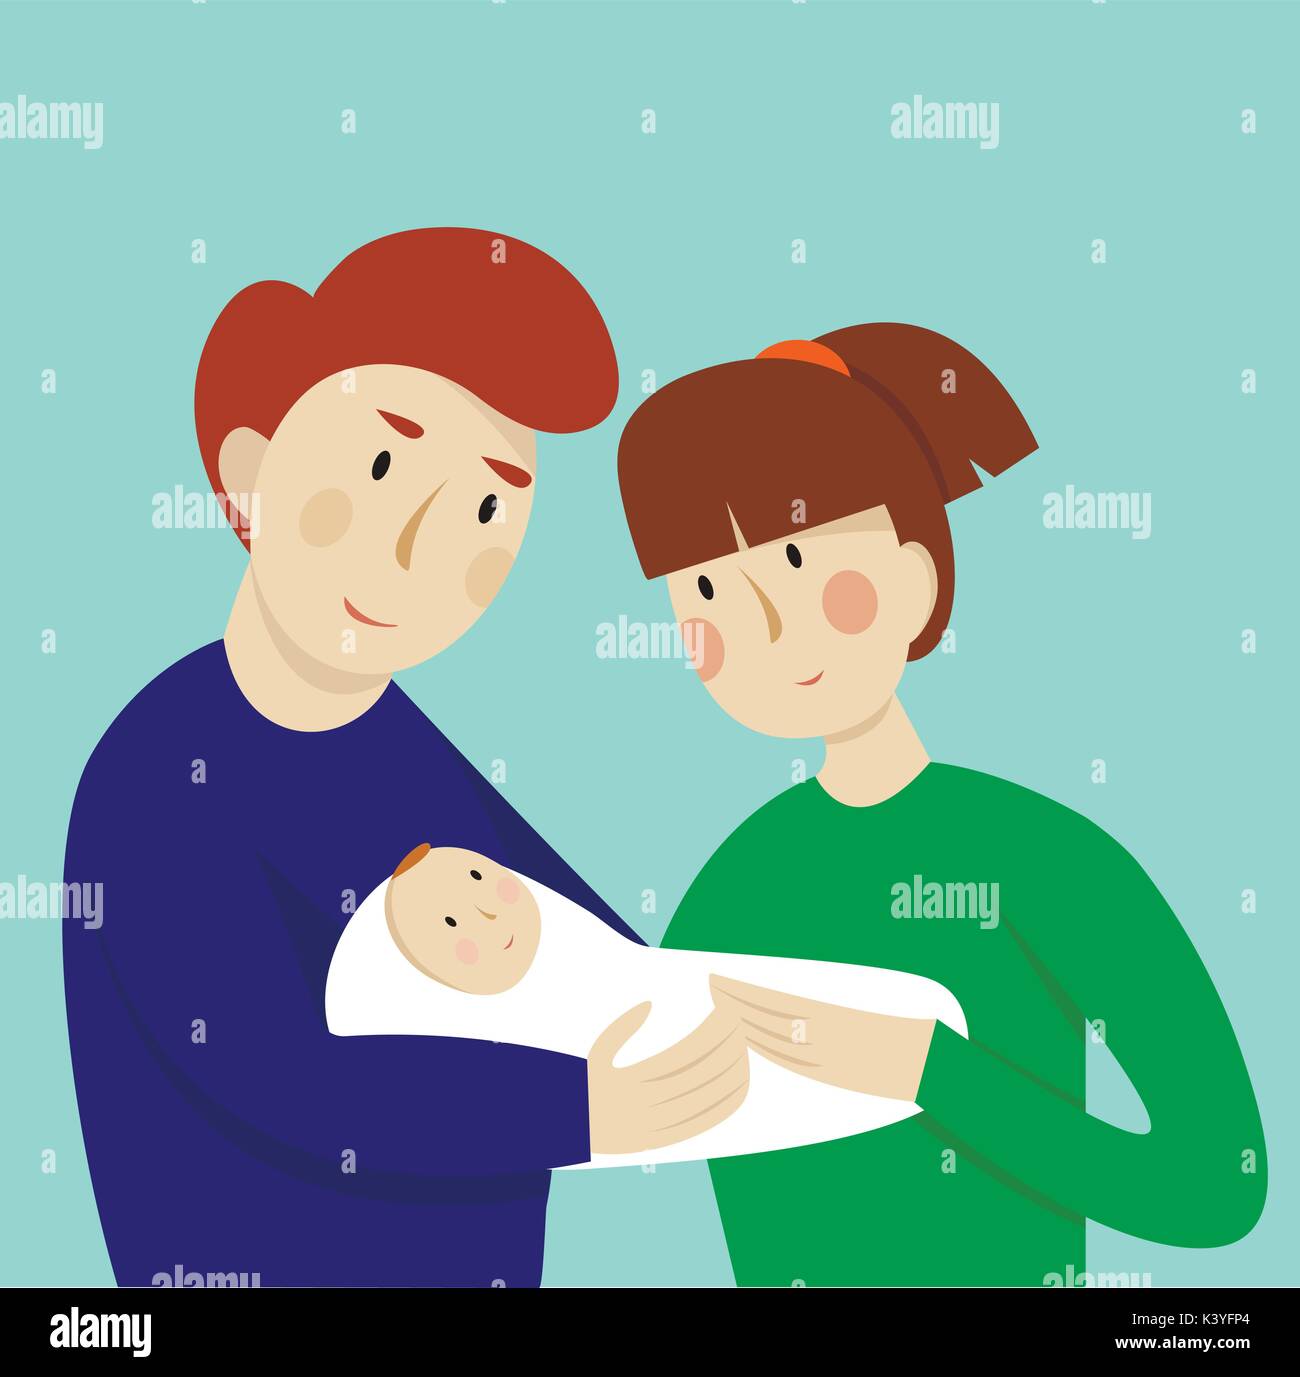 Illustration Du Couple Avec Bebe Concept De La Maternite L Amour Et De Soins Image Vectorielle Stock Alamy